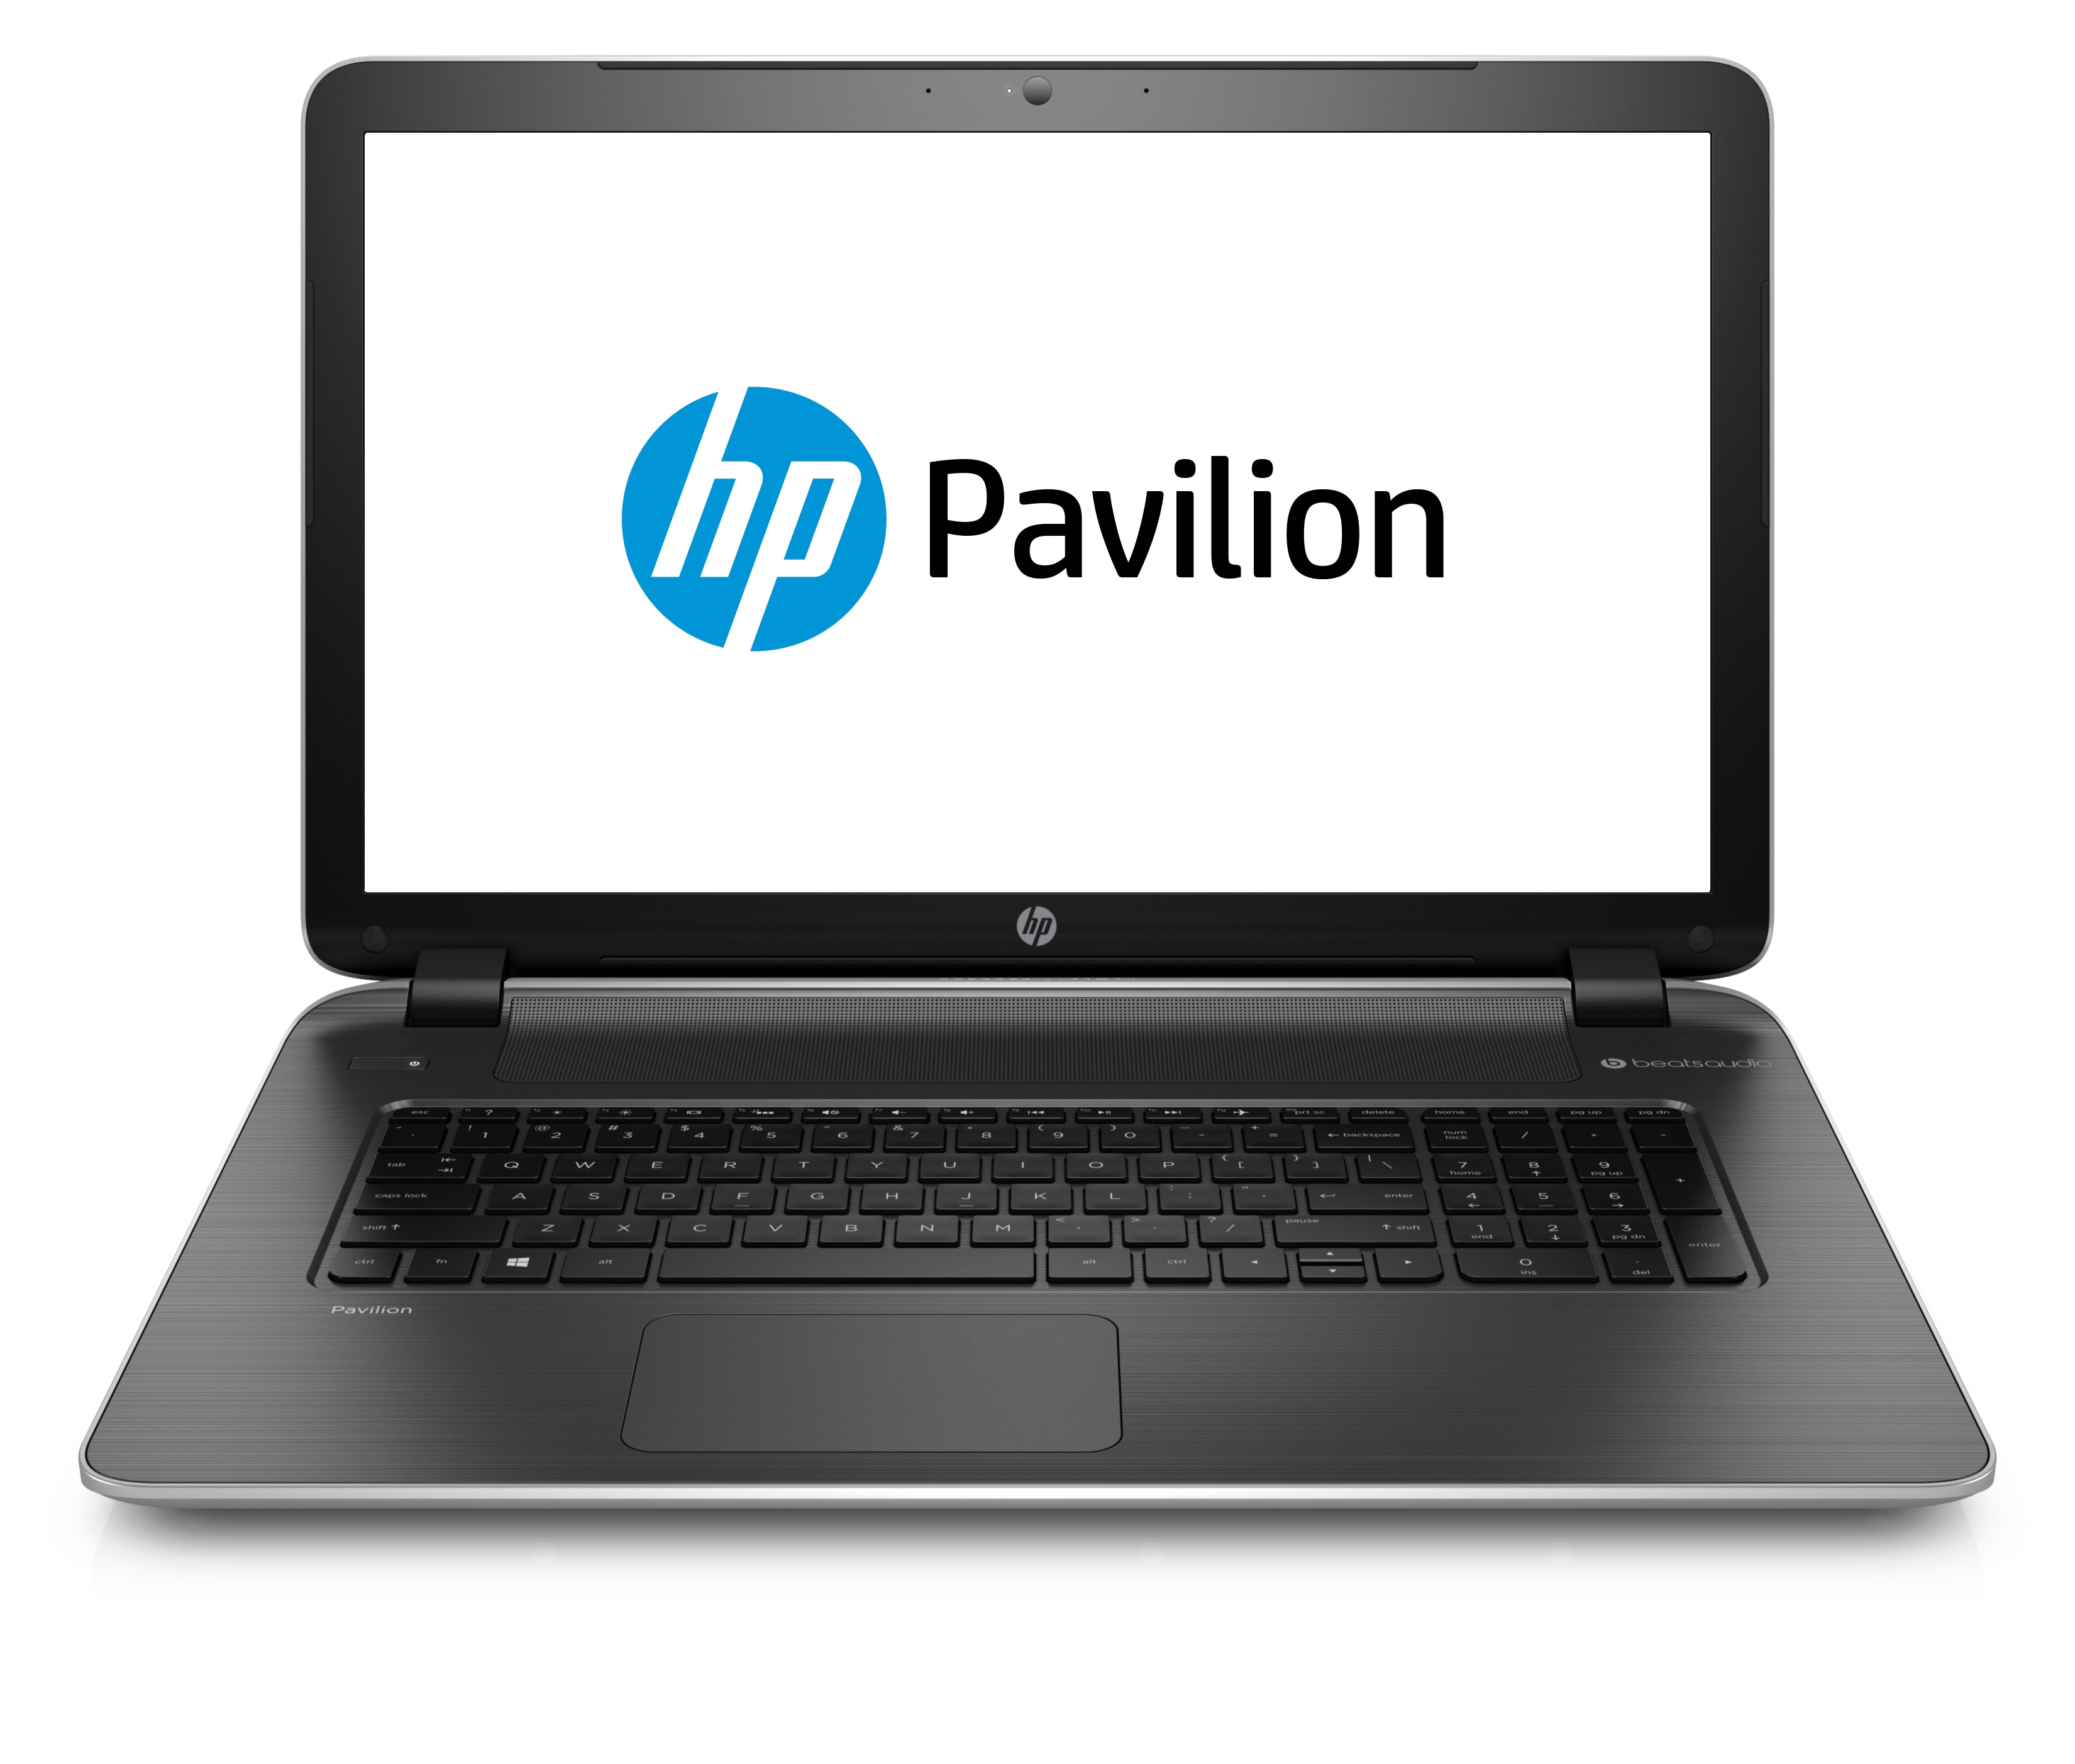 Laptop HP Pavilion 17-f045nb, AMD A8-6410 2.00GHz, 4GB DDR3, 120GB SSD, DVD-RW, 17.3 Inch, Tastatura Numerica, Webcam